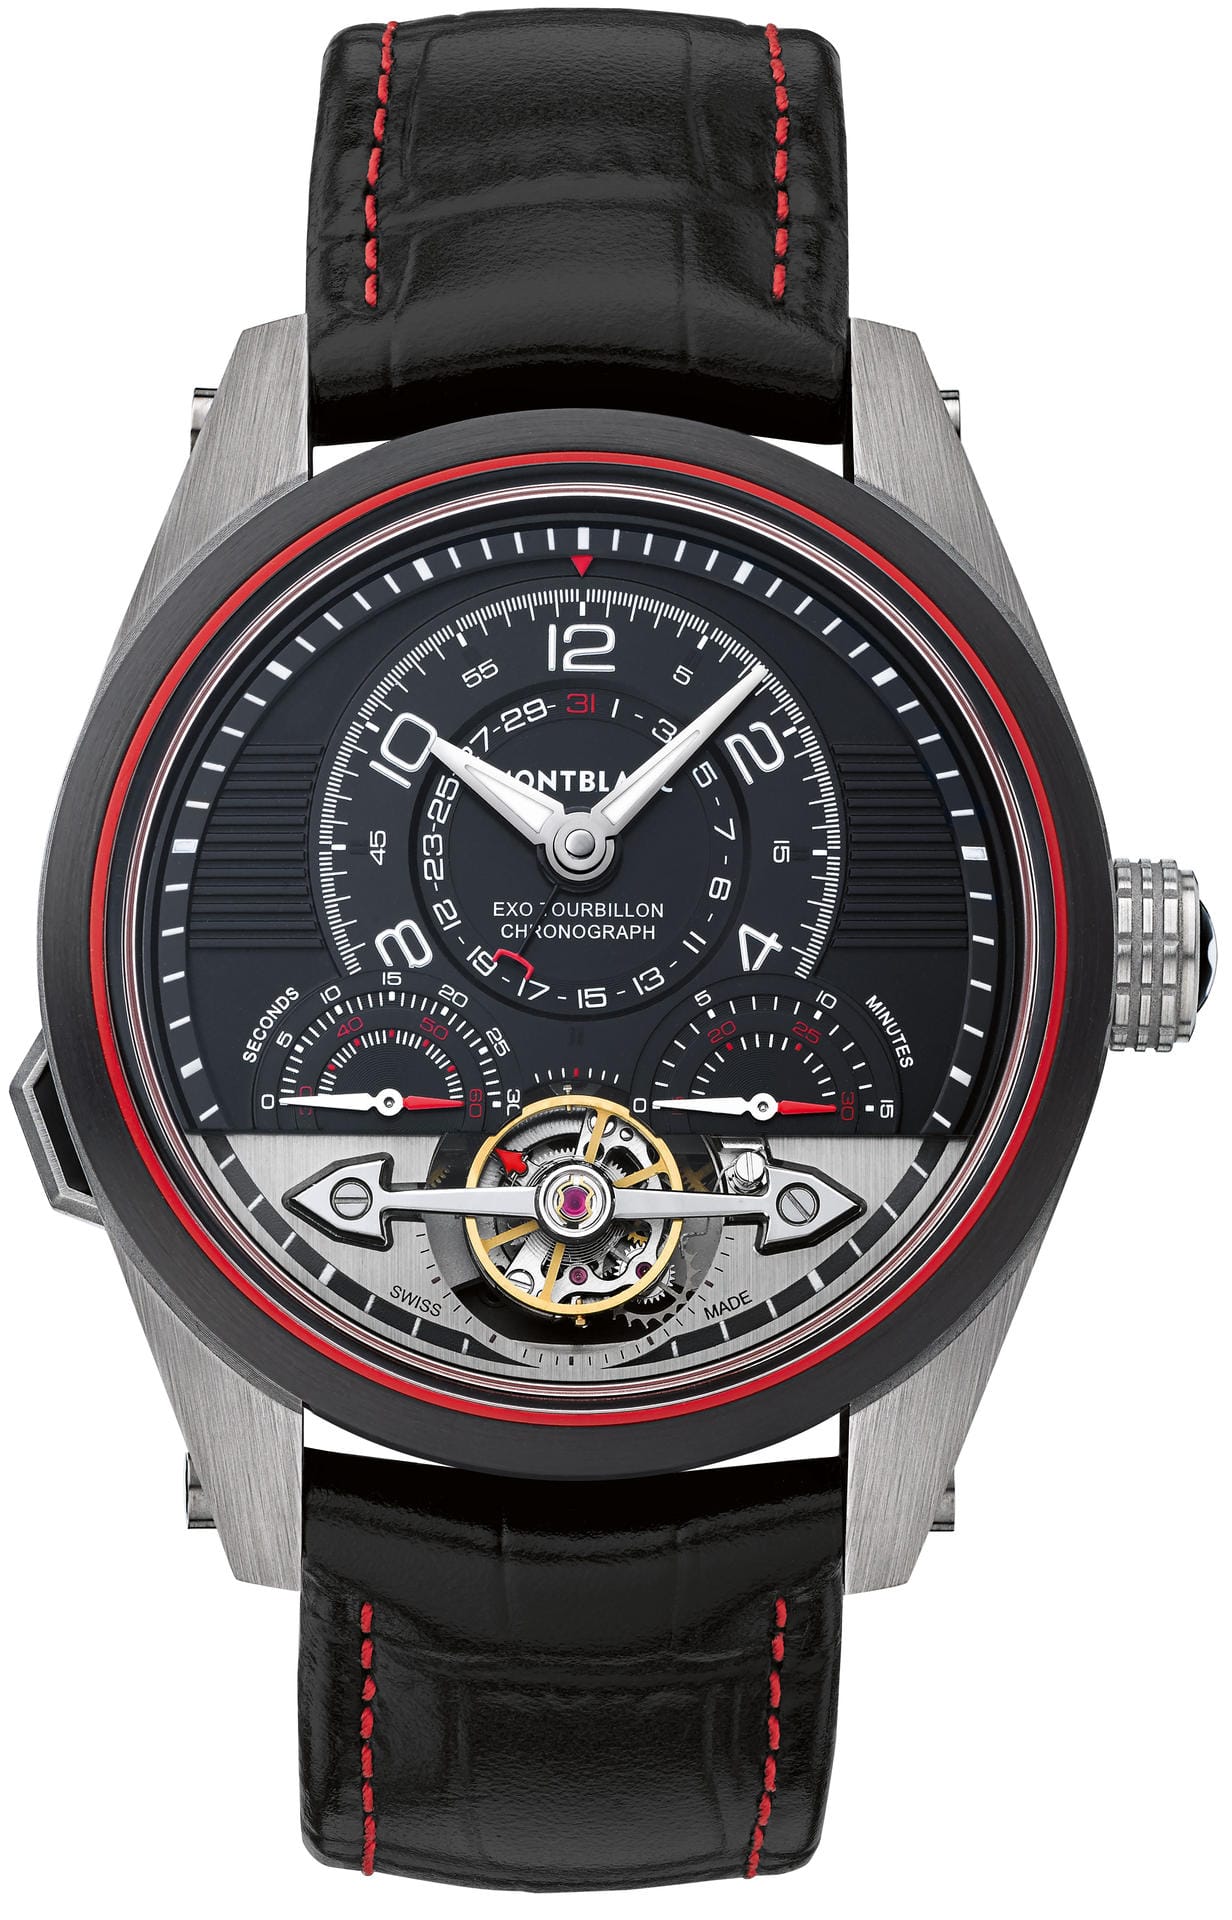 Die TimeWalker ExoTourbillon Minute Chronograph Limited Edition 100 verfügt mit dem Tourbillon über die aufwändigste und damit auch teuerste Komplikation. Die Uhr kostet 39.500 Euro.